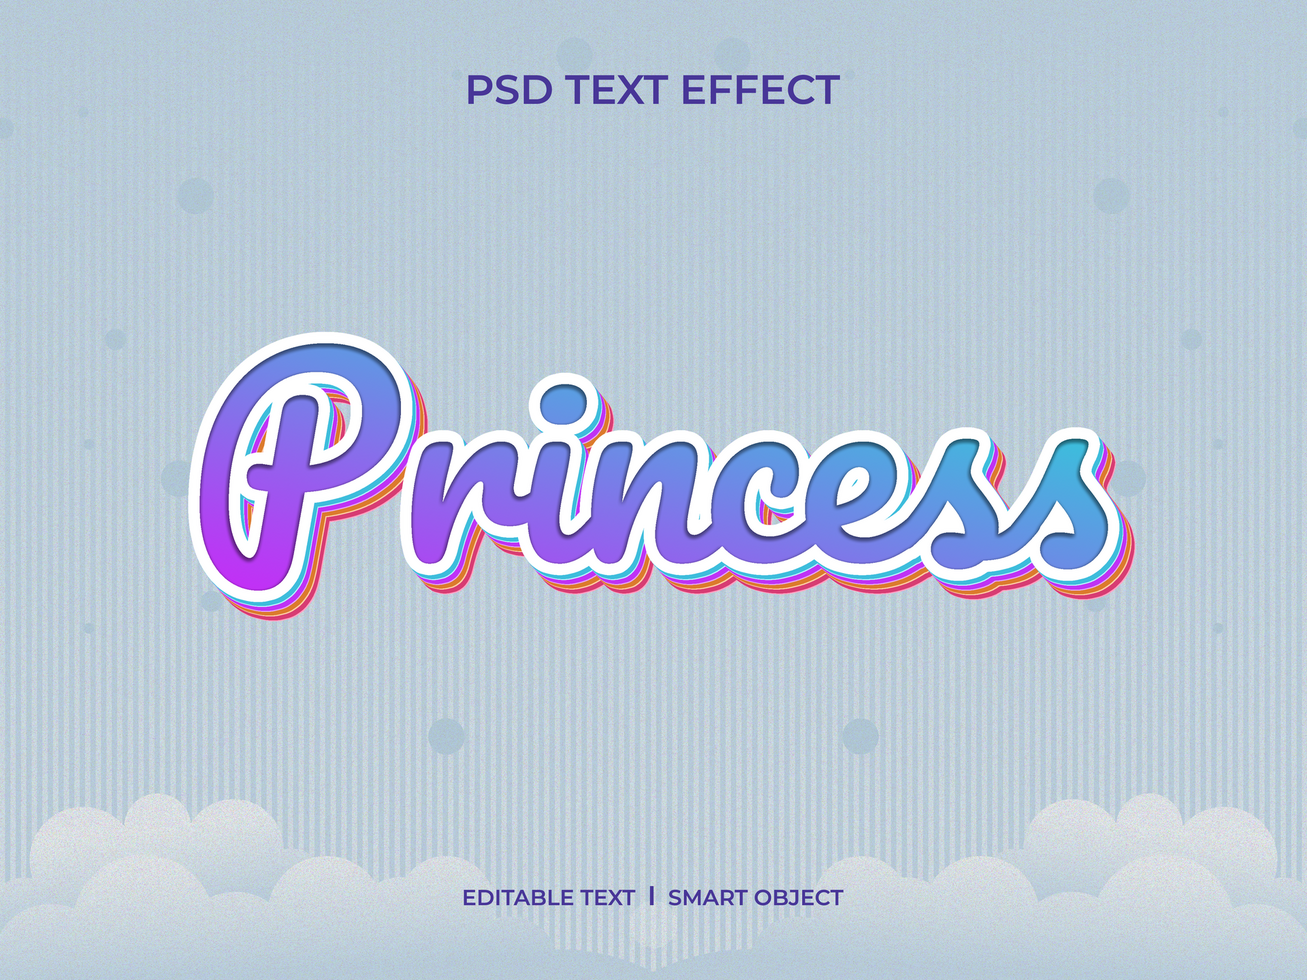 Princess text effect psd